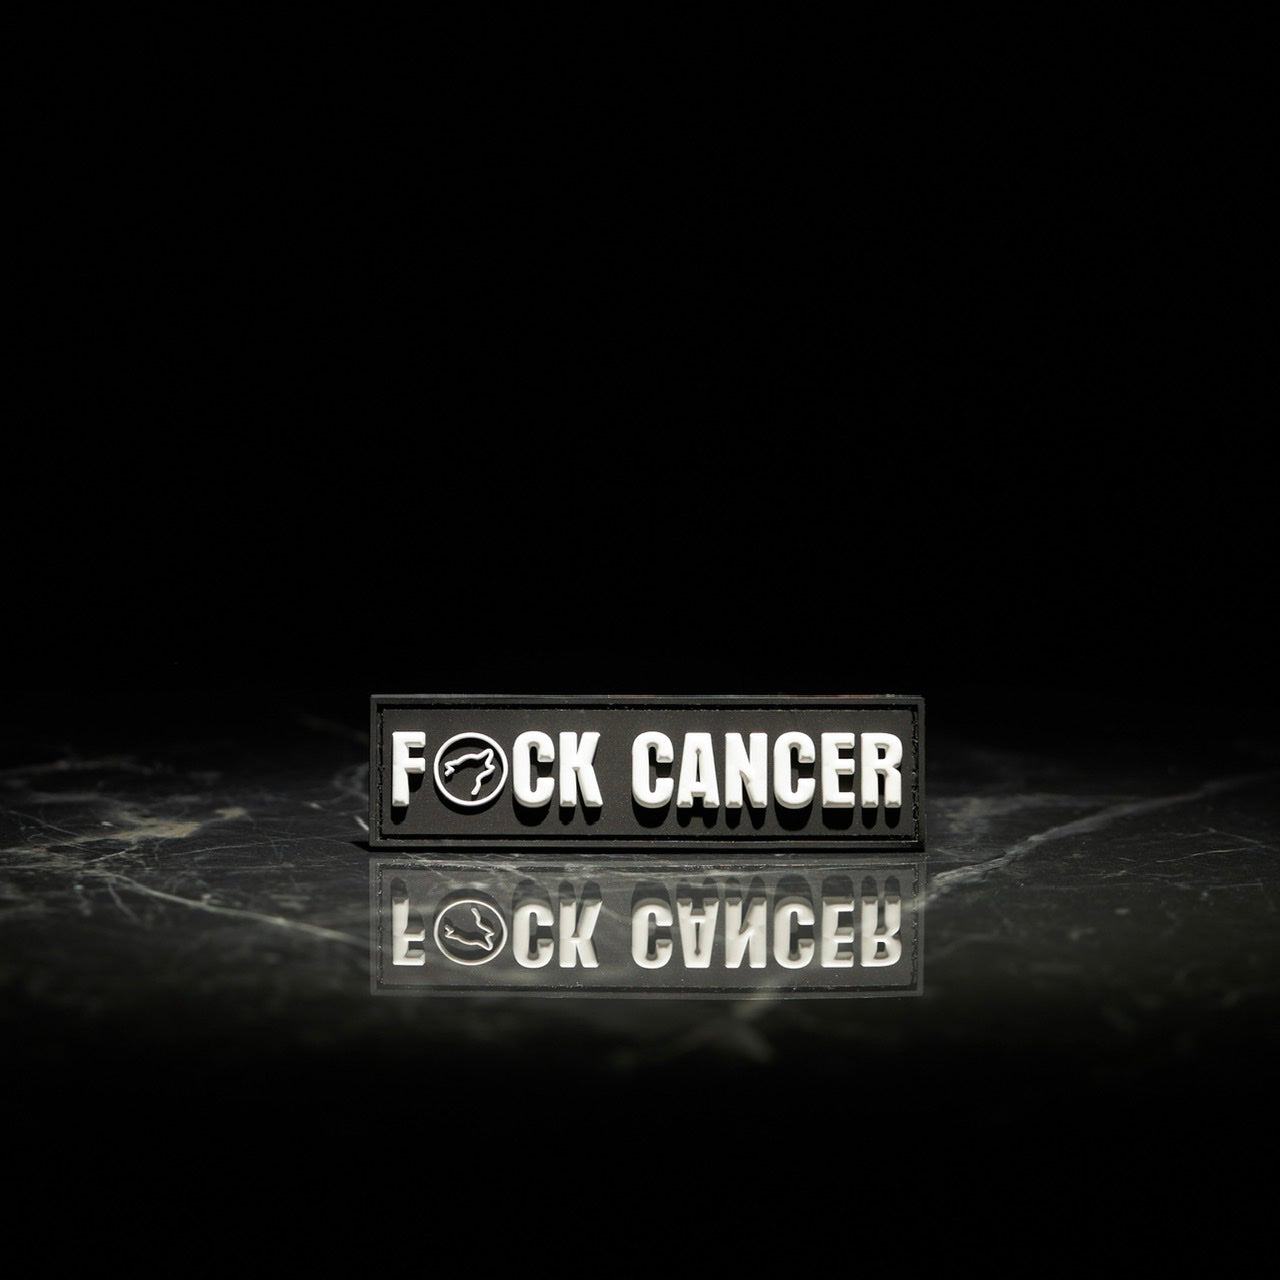 Fck Cancer Velcro Patch